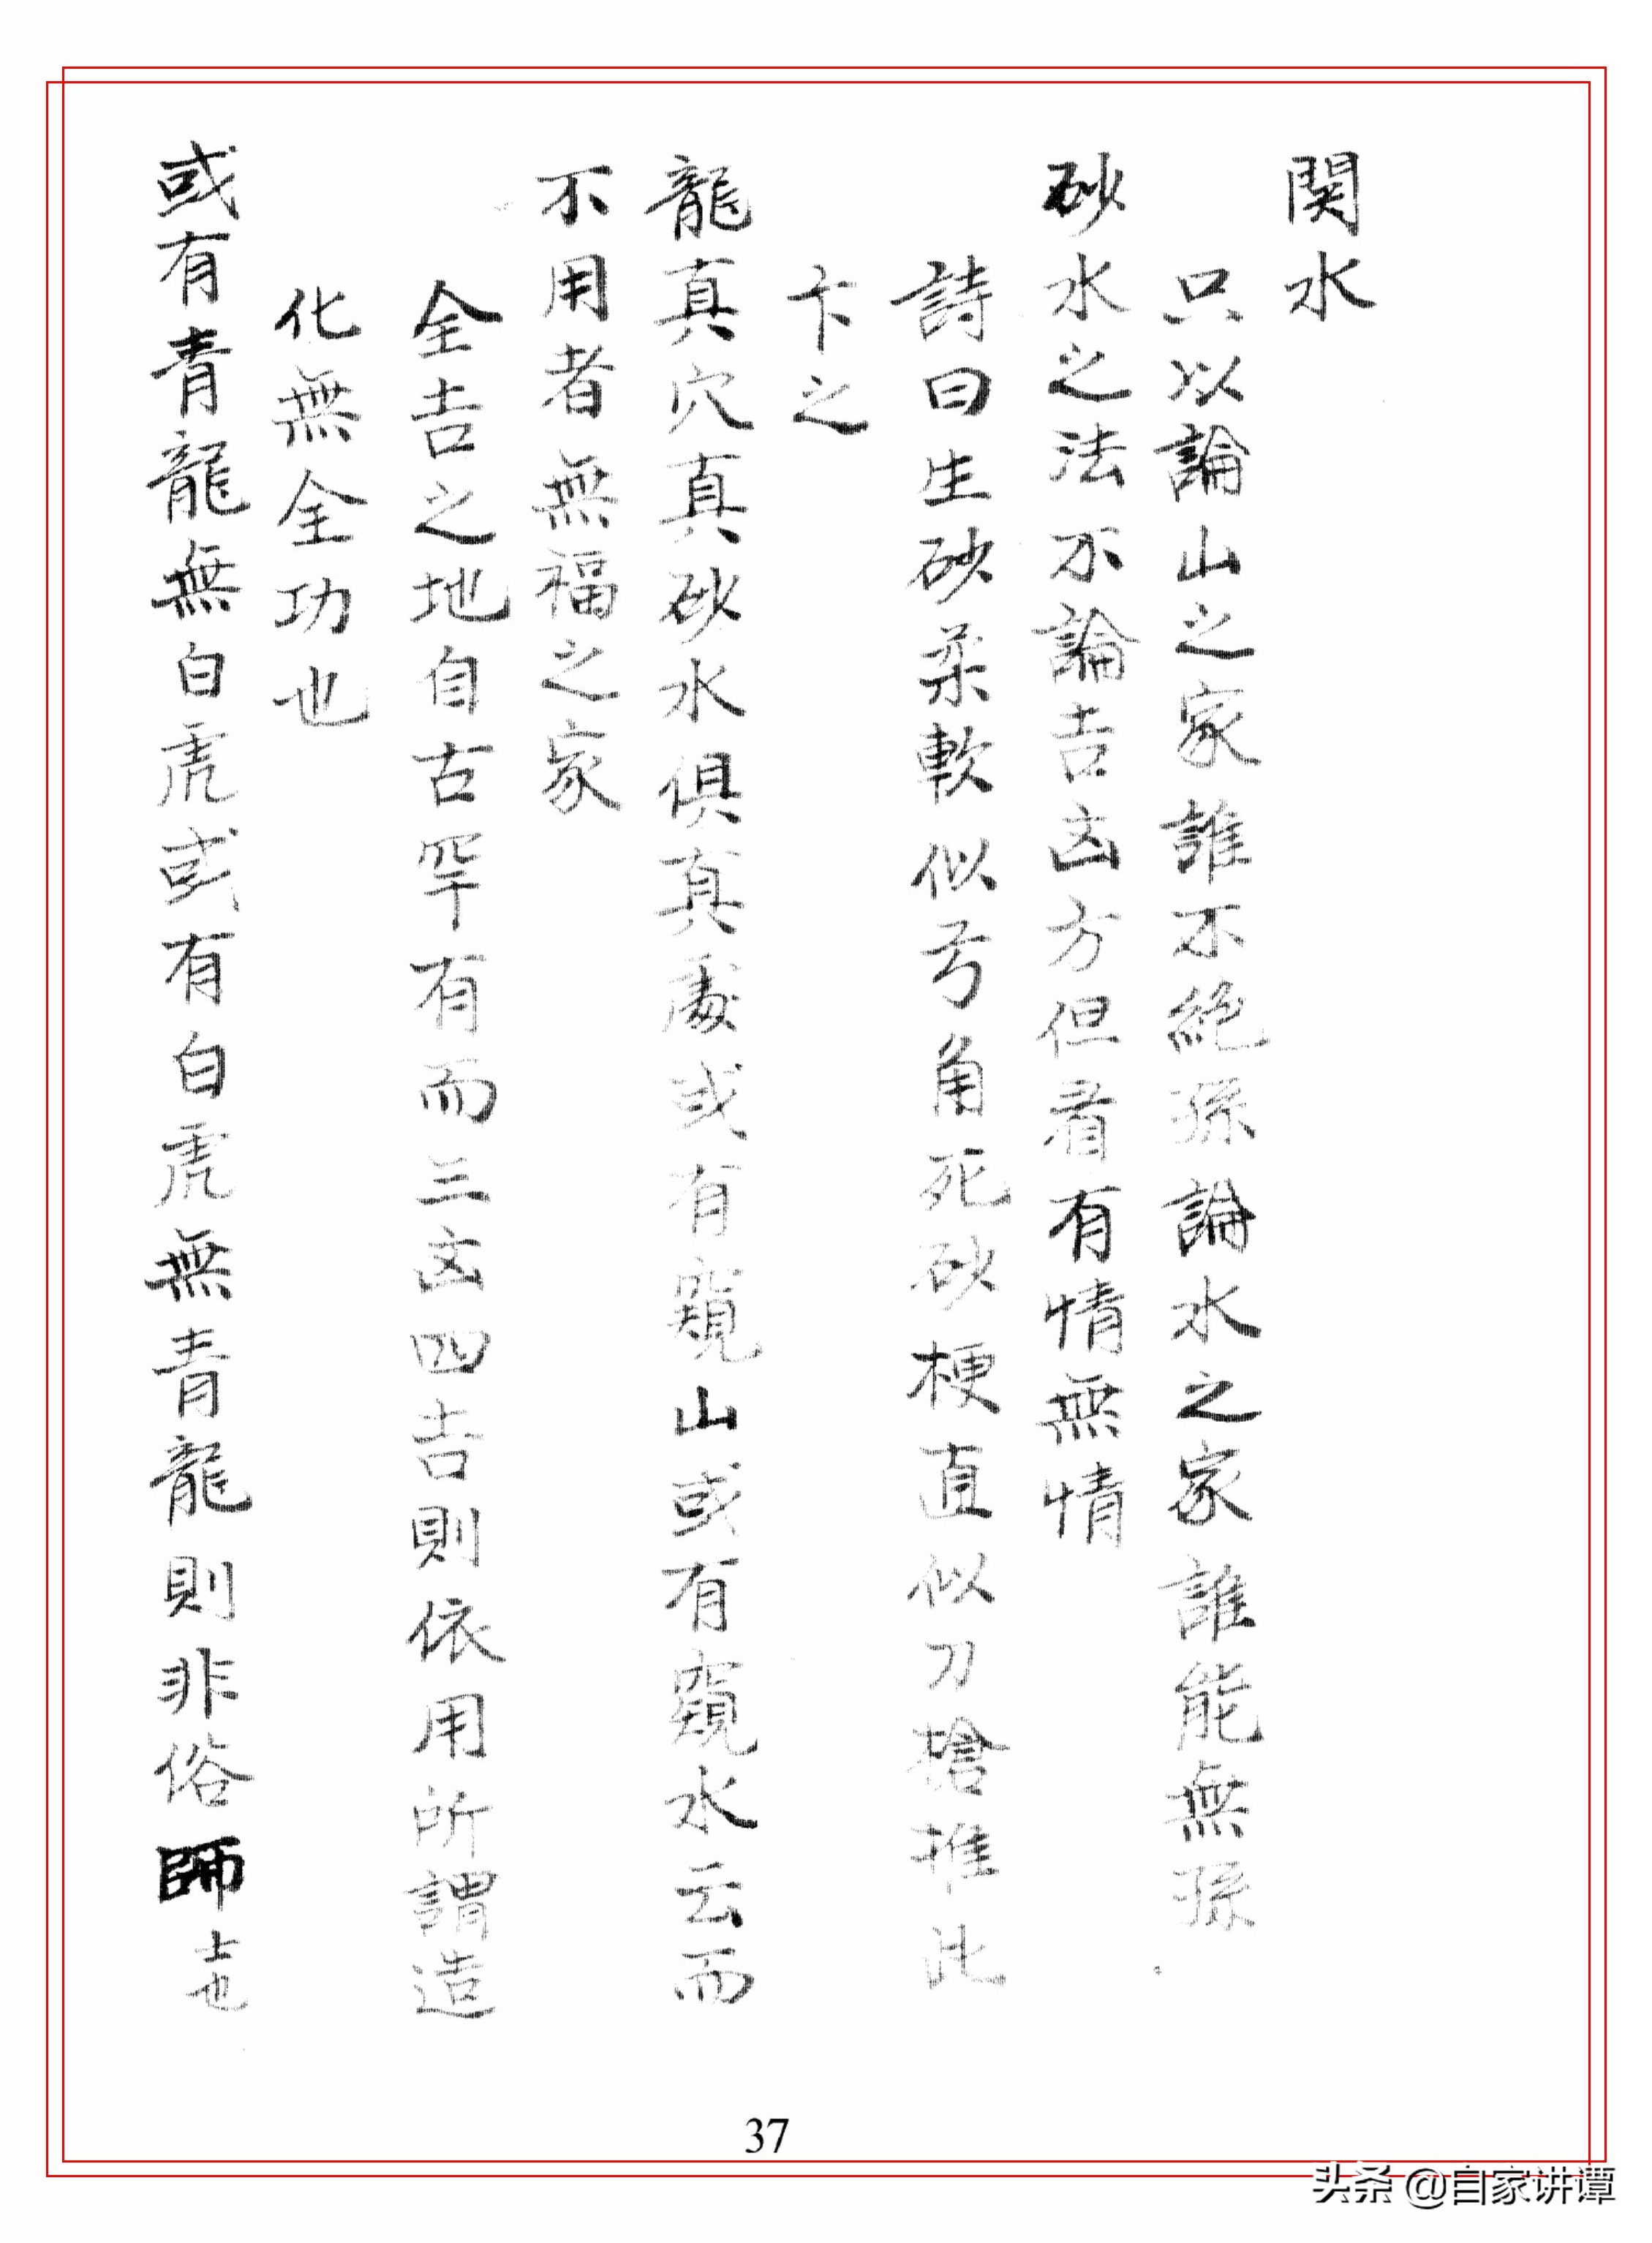 奎章阁藏风水类古籍抄本——《白云堂堪舆口诀》